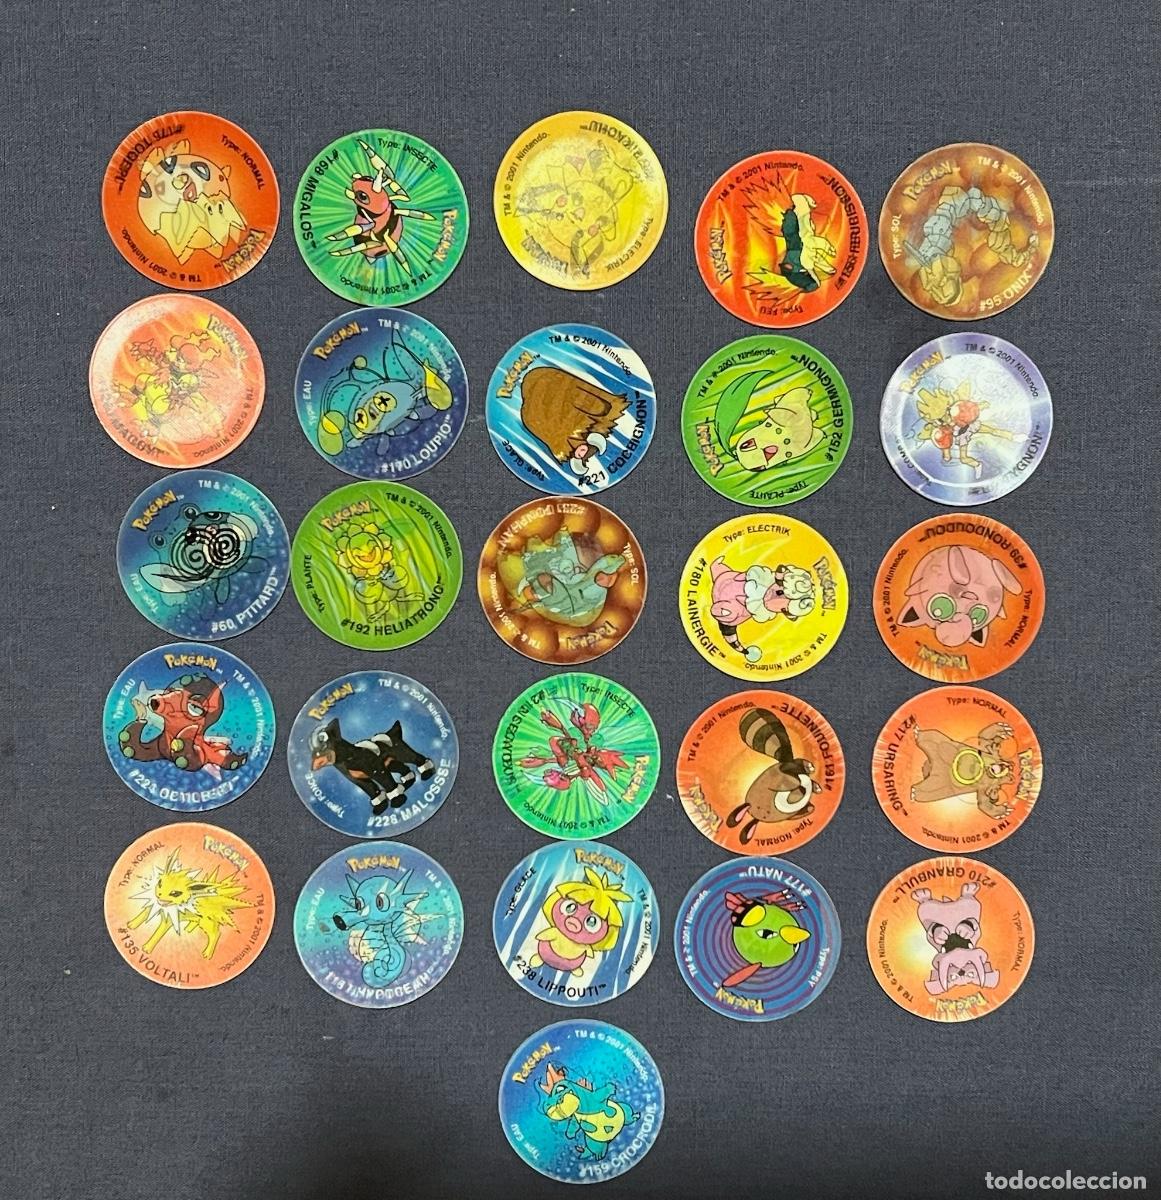 26 tazos pokemon attack . tazo pokémon league 1 - Acheter Autres jouets  anciens et jeux de collection sur todocoleccion